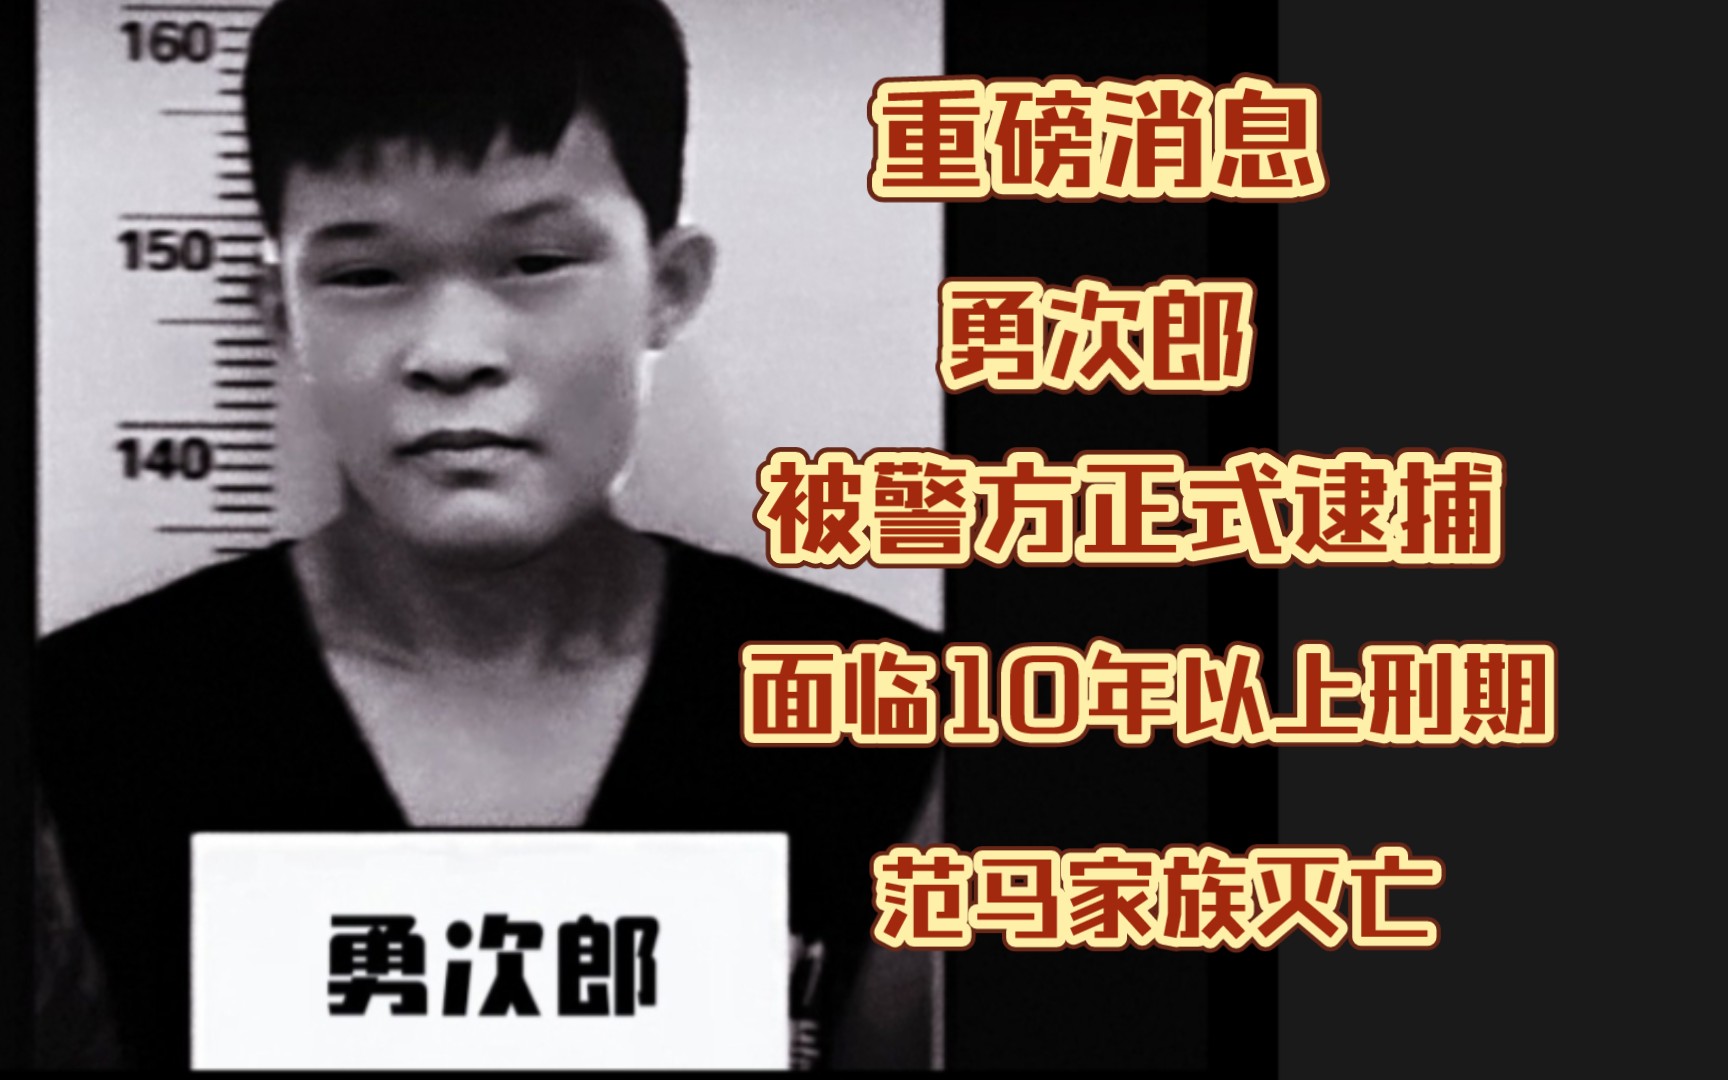 勇次郎范小勇被警方正式逮捕，面临十年以上刑期，重磅消息一发出，众人惊叹不已，范马家族走上灭亡！